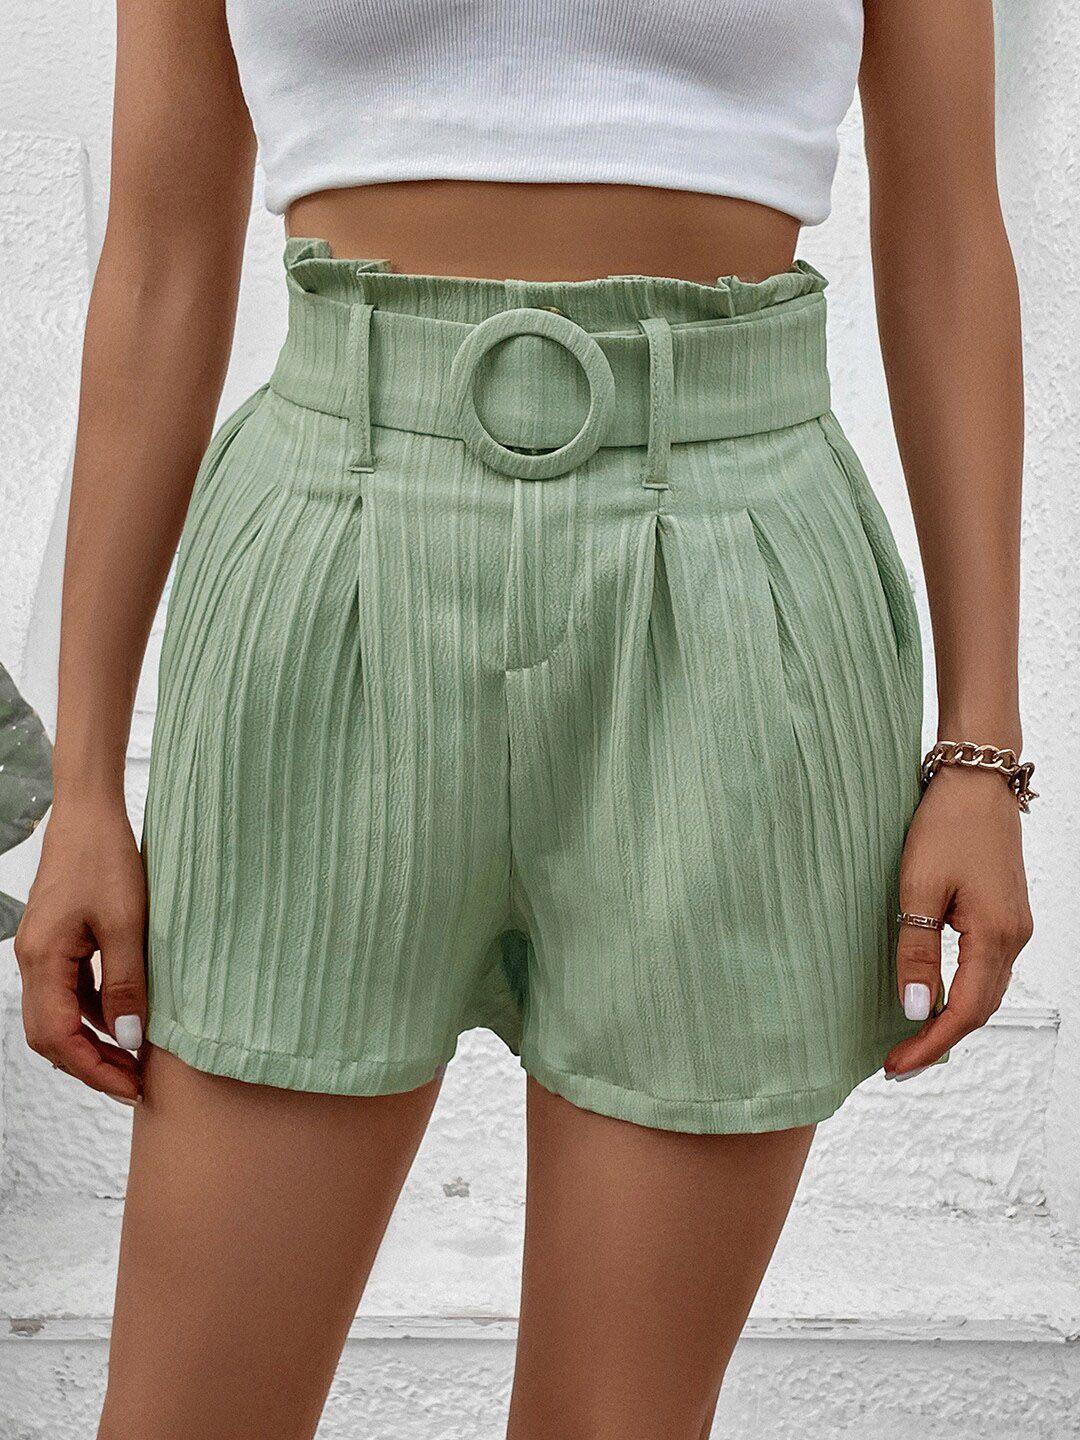 stylecast women green belted regular shorts